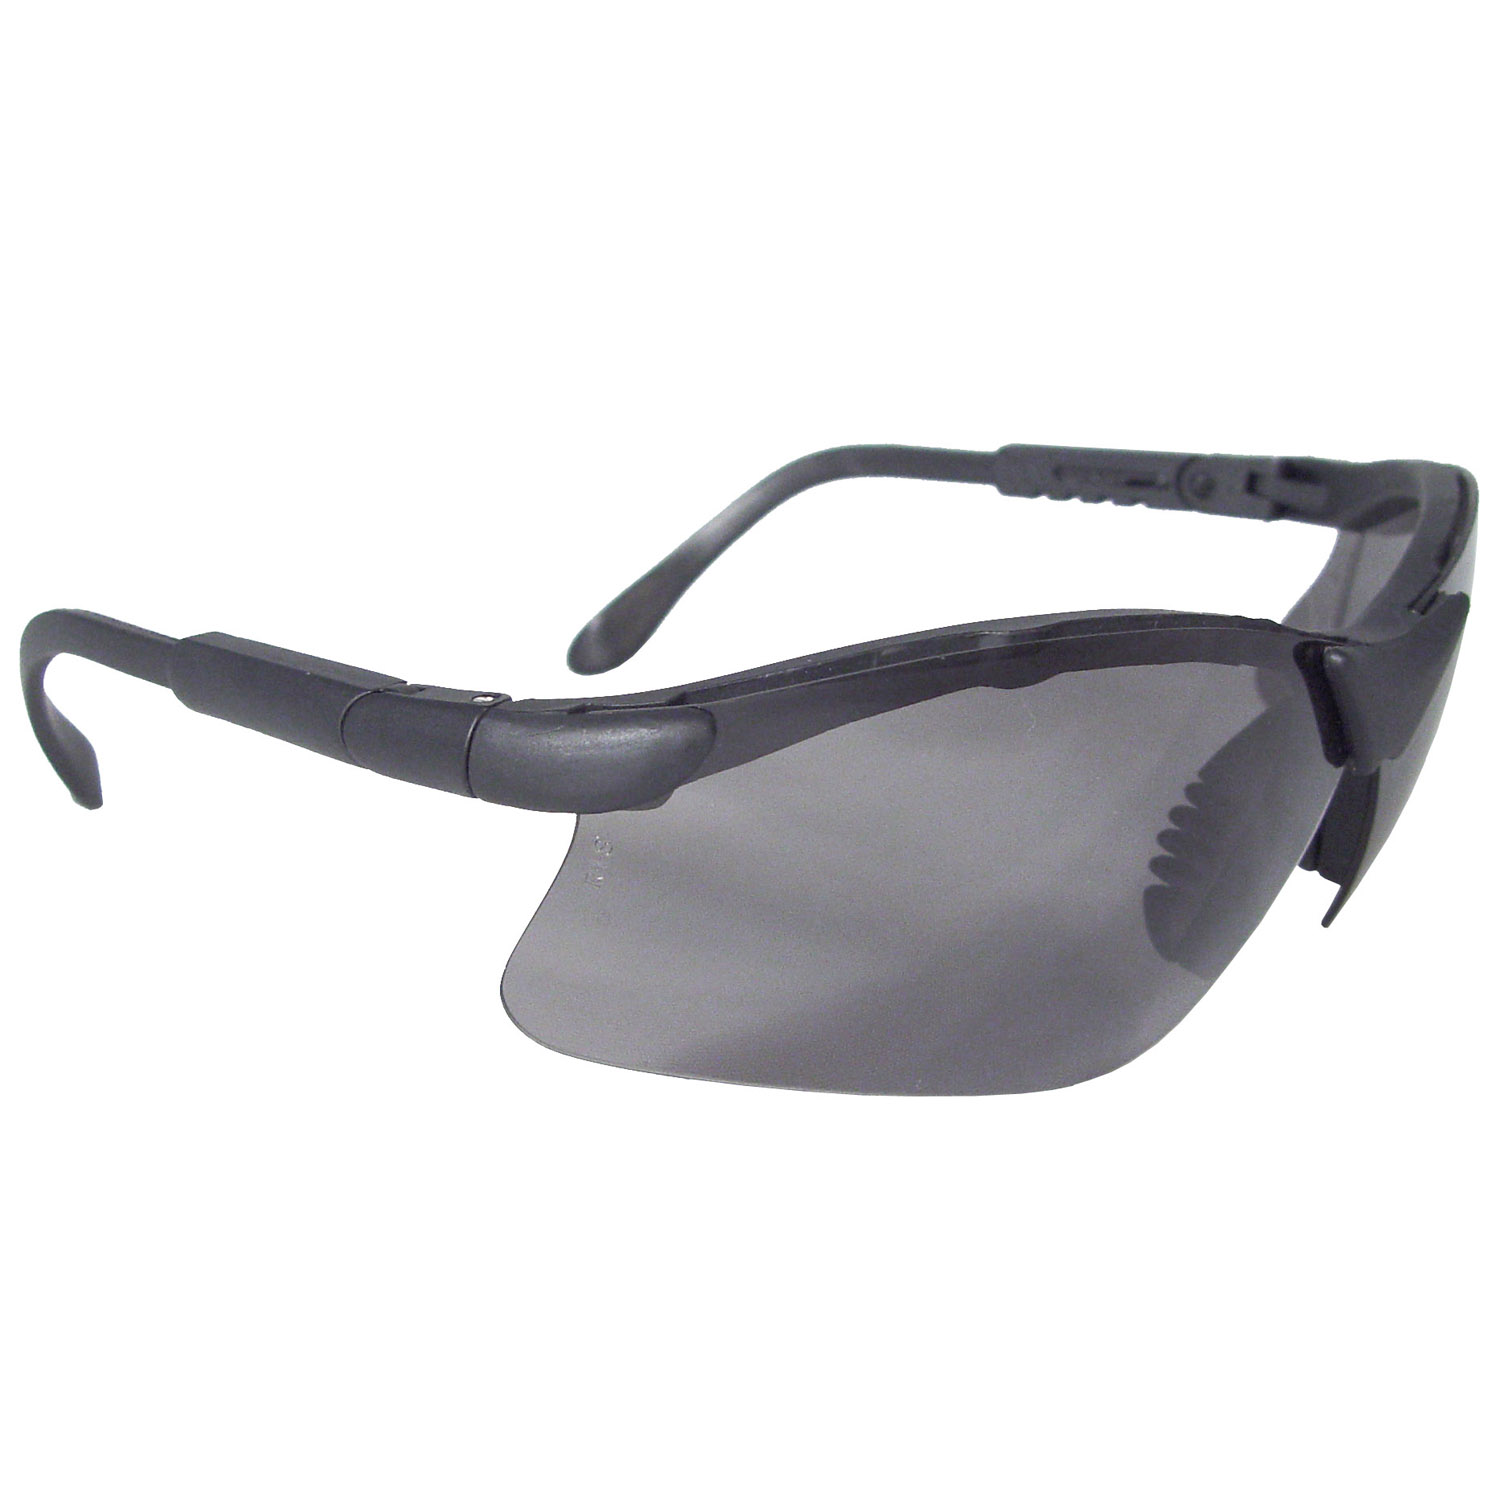 Revelation™ Safety Eyewear - Black Frame - Smoke Lens - Tinted Lens